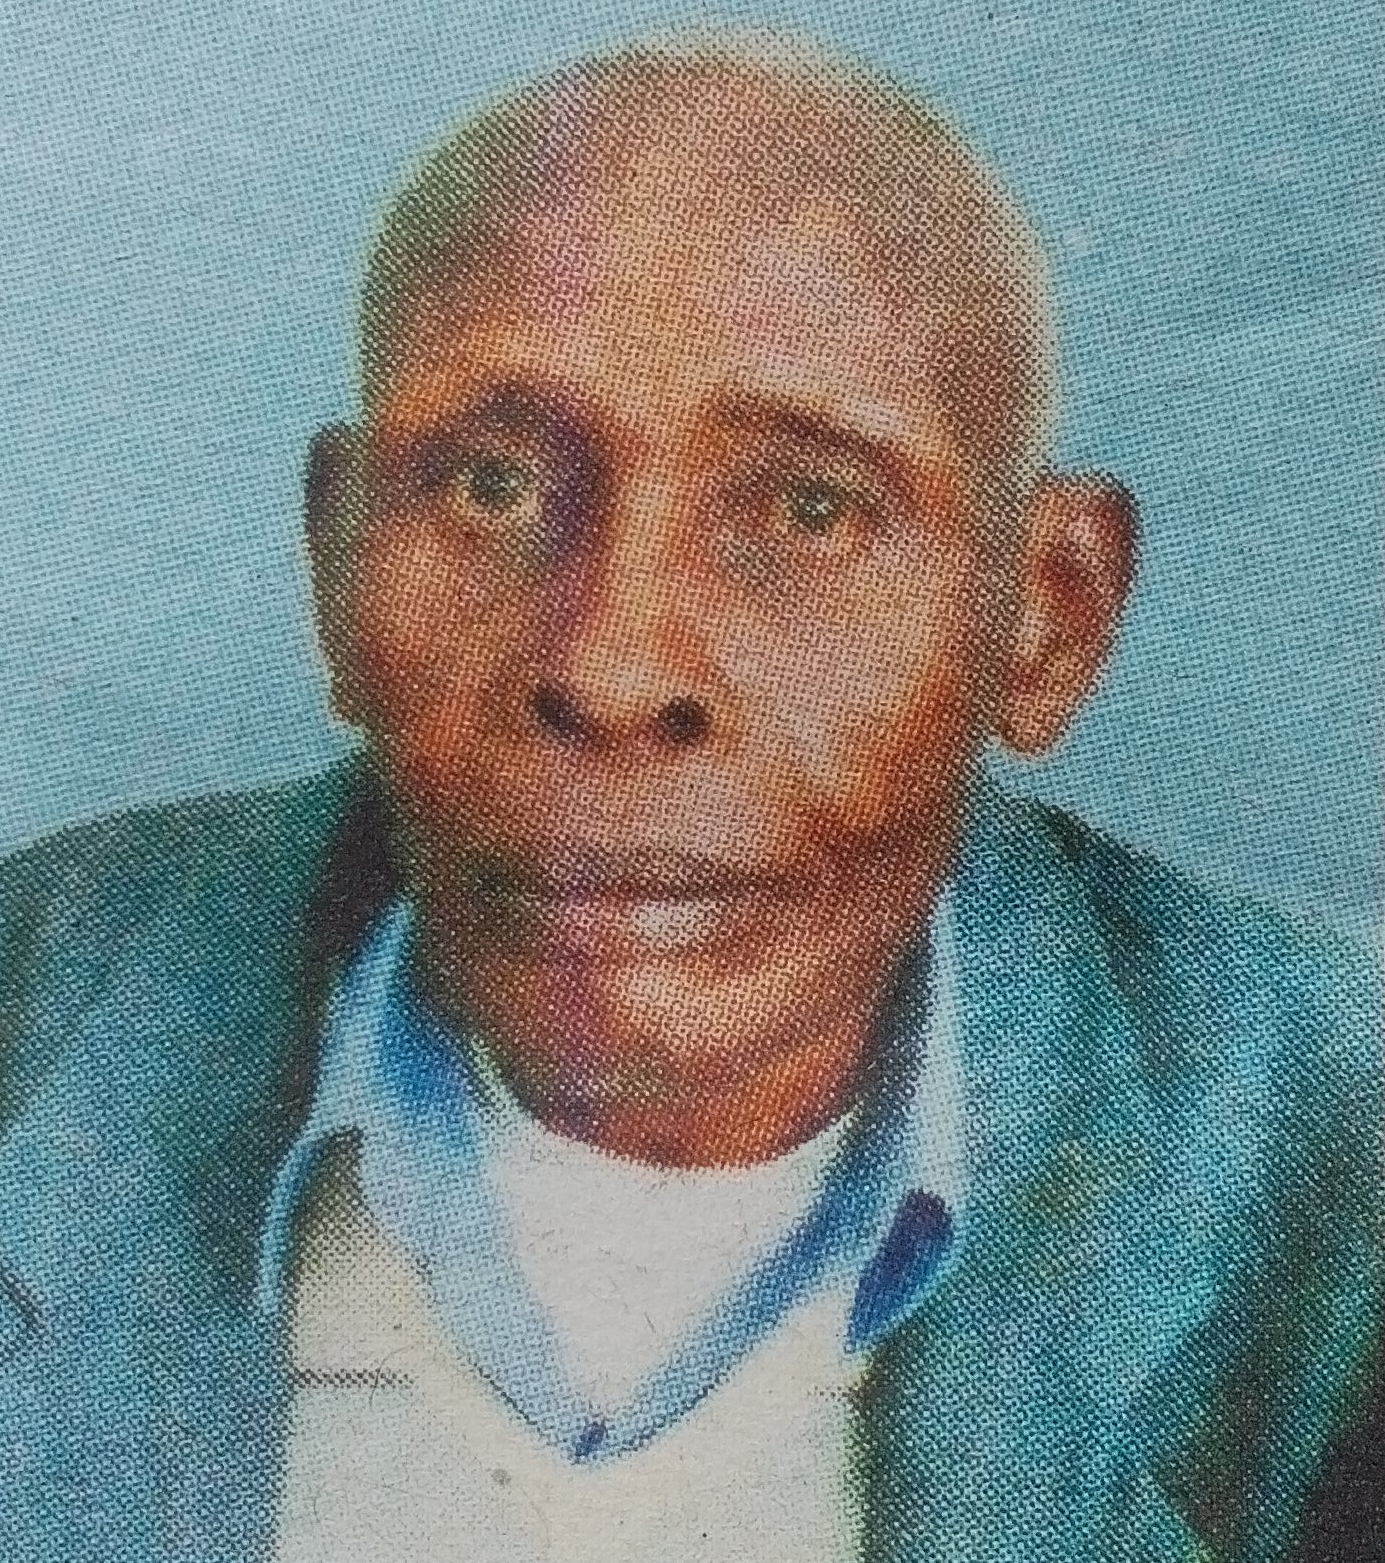 Obituary Image of Simon Nyoike Nduati